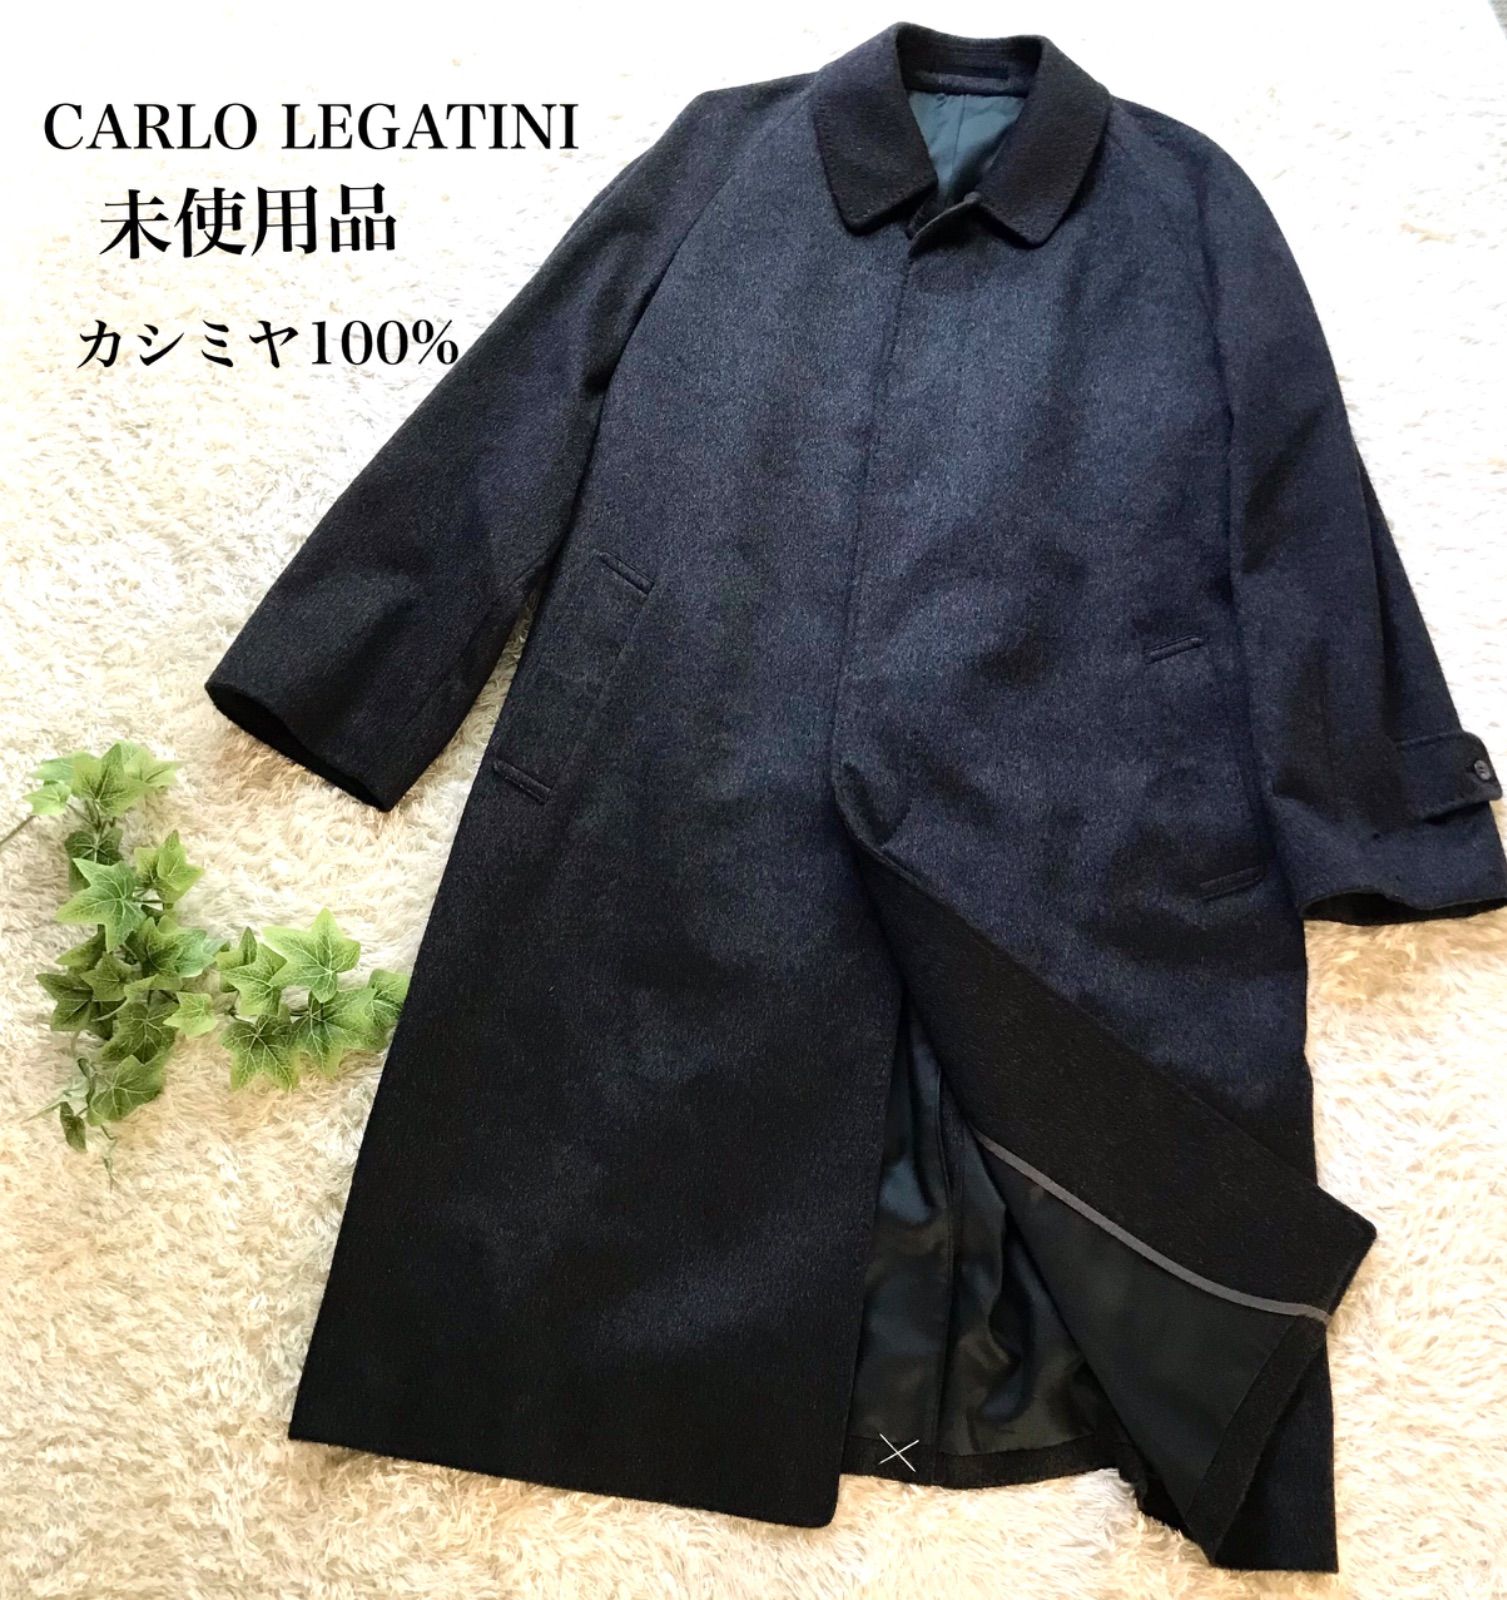 日本製高級イタリア生地CARLO LEGATINI カシミヤステンカラーコート